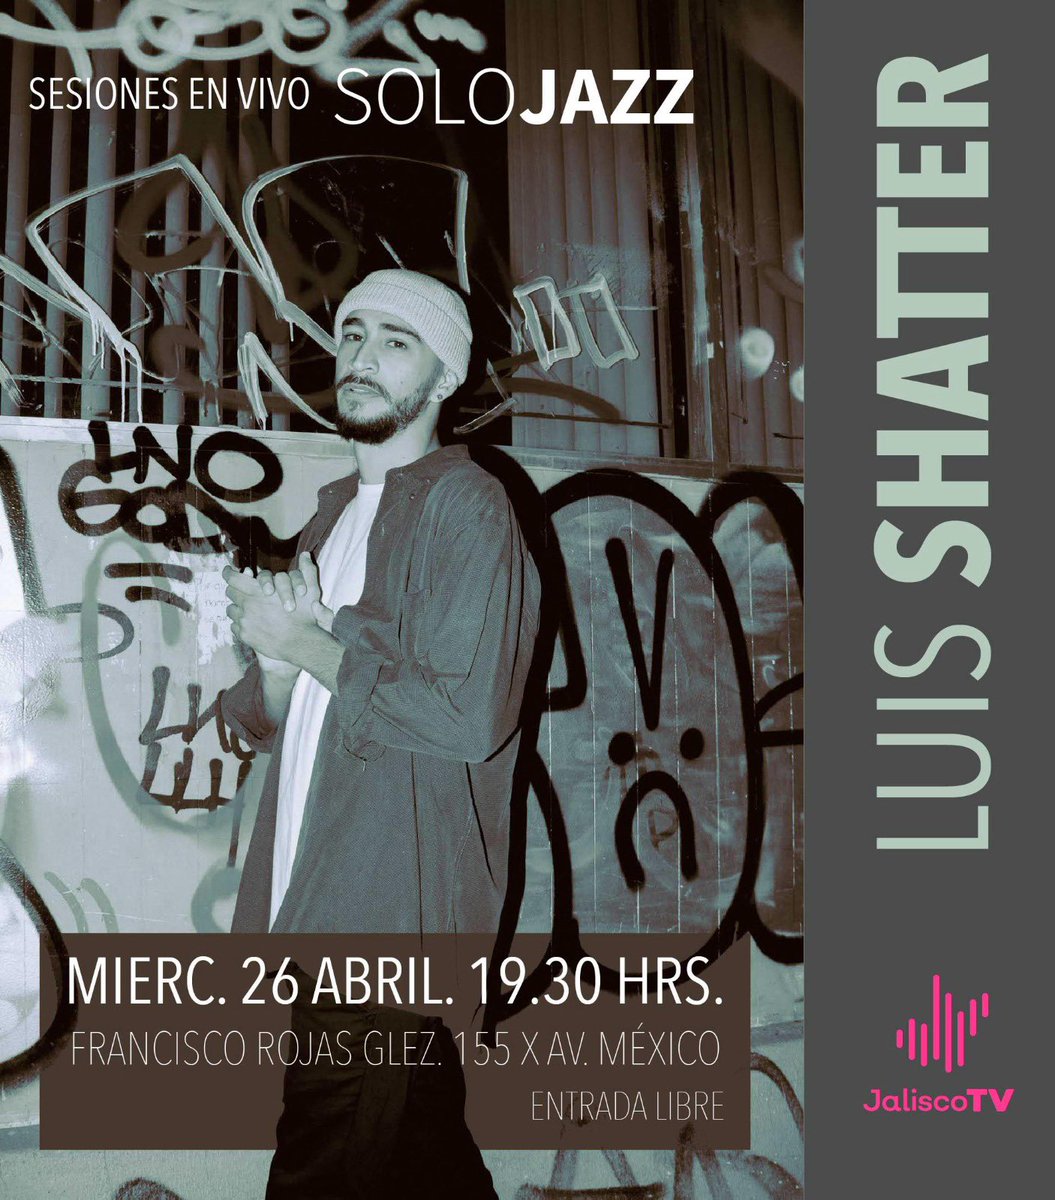 Hoy en sesiones en vivo de sólo jazz nos visita Luis Shatter. Acompáñanos durante la grabación de la sesión en @JaliscoTV 7.30 pm. Entrada libre. ( Francisco Rojas Glez. 155 x Av.Mexico).